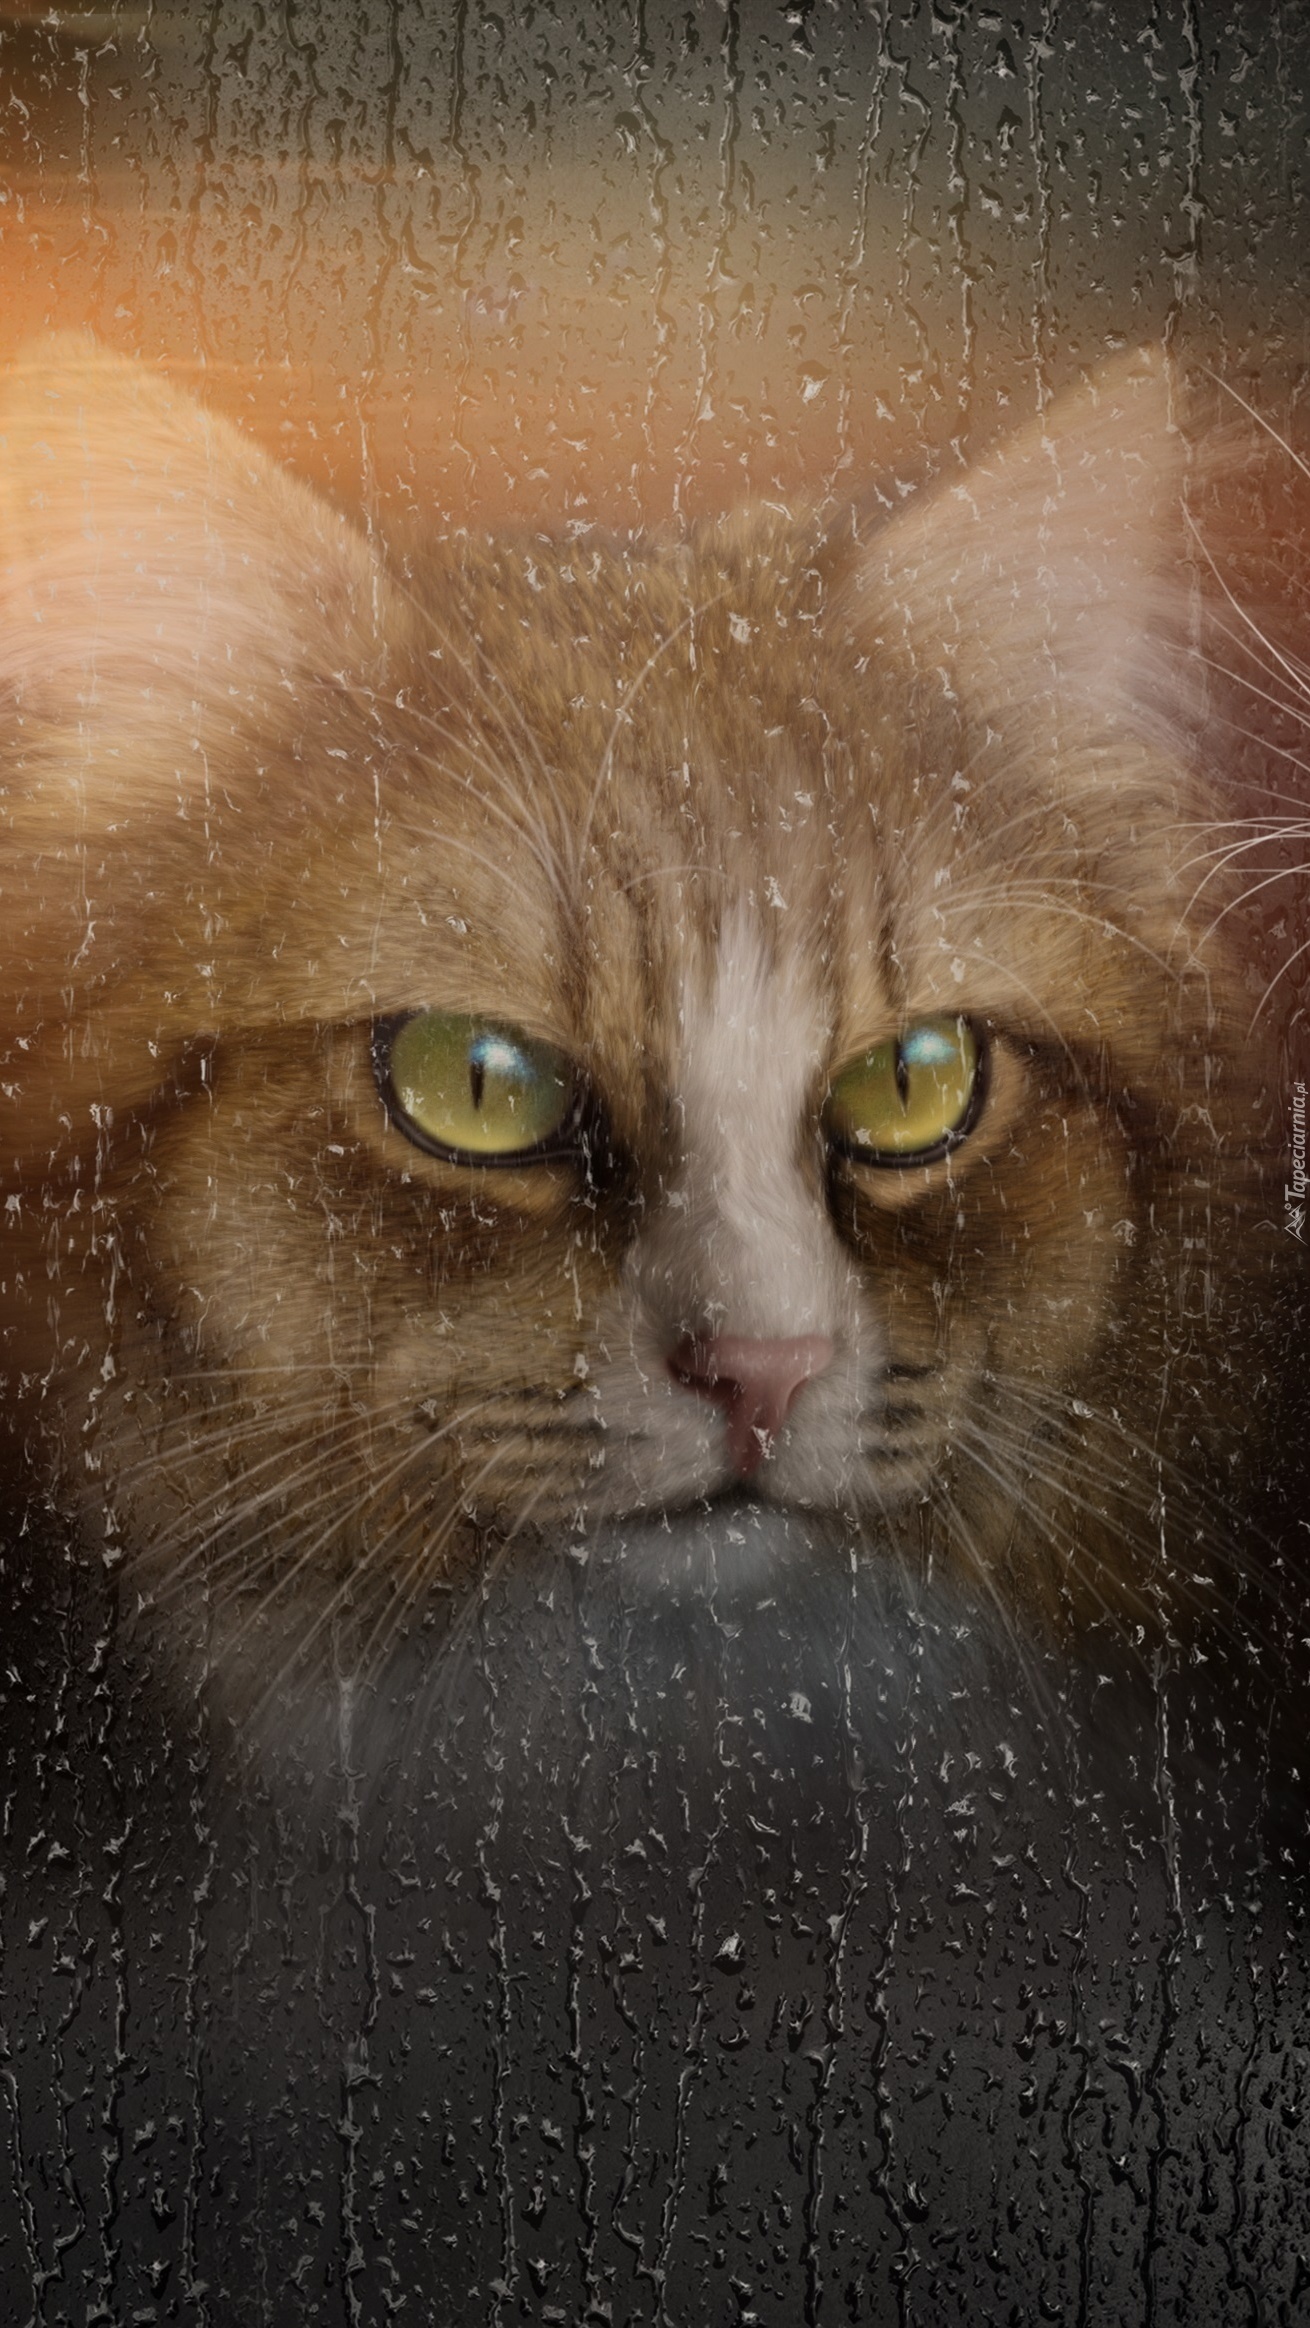 Kot za szybą w deszczu